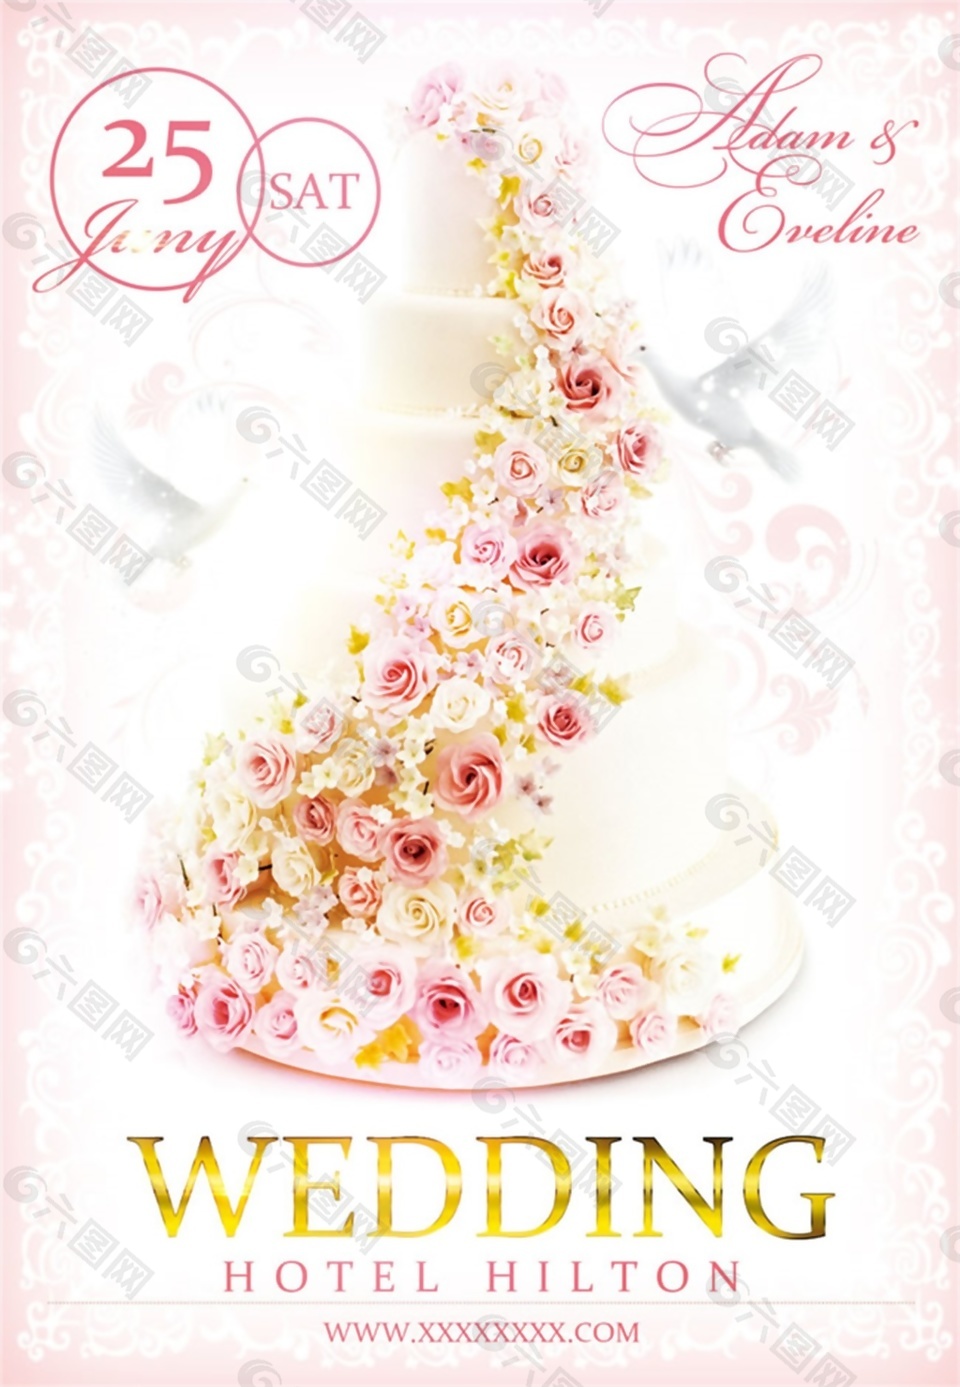 素材模板下载,本次平面广告 作品主题是 韩式浪漫风格婚礼酒店海报psd